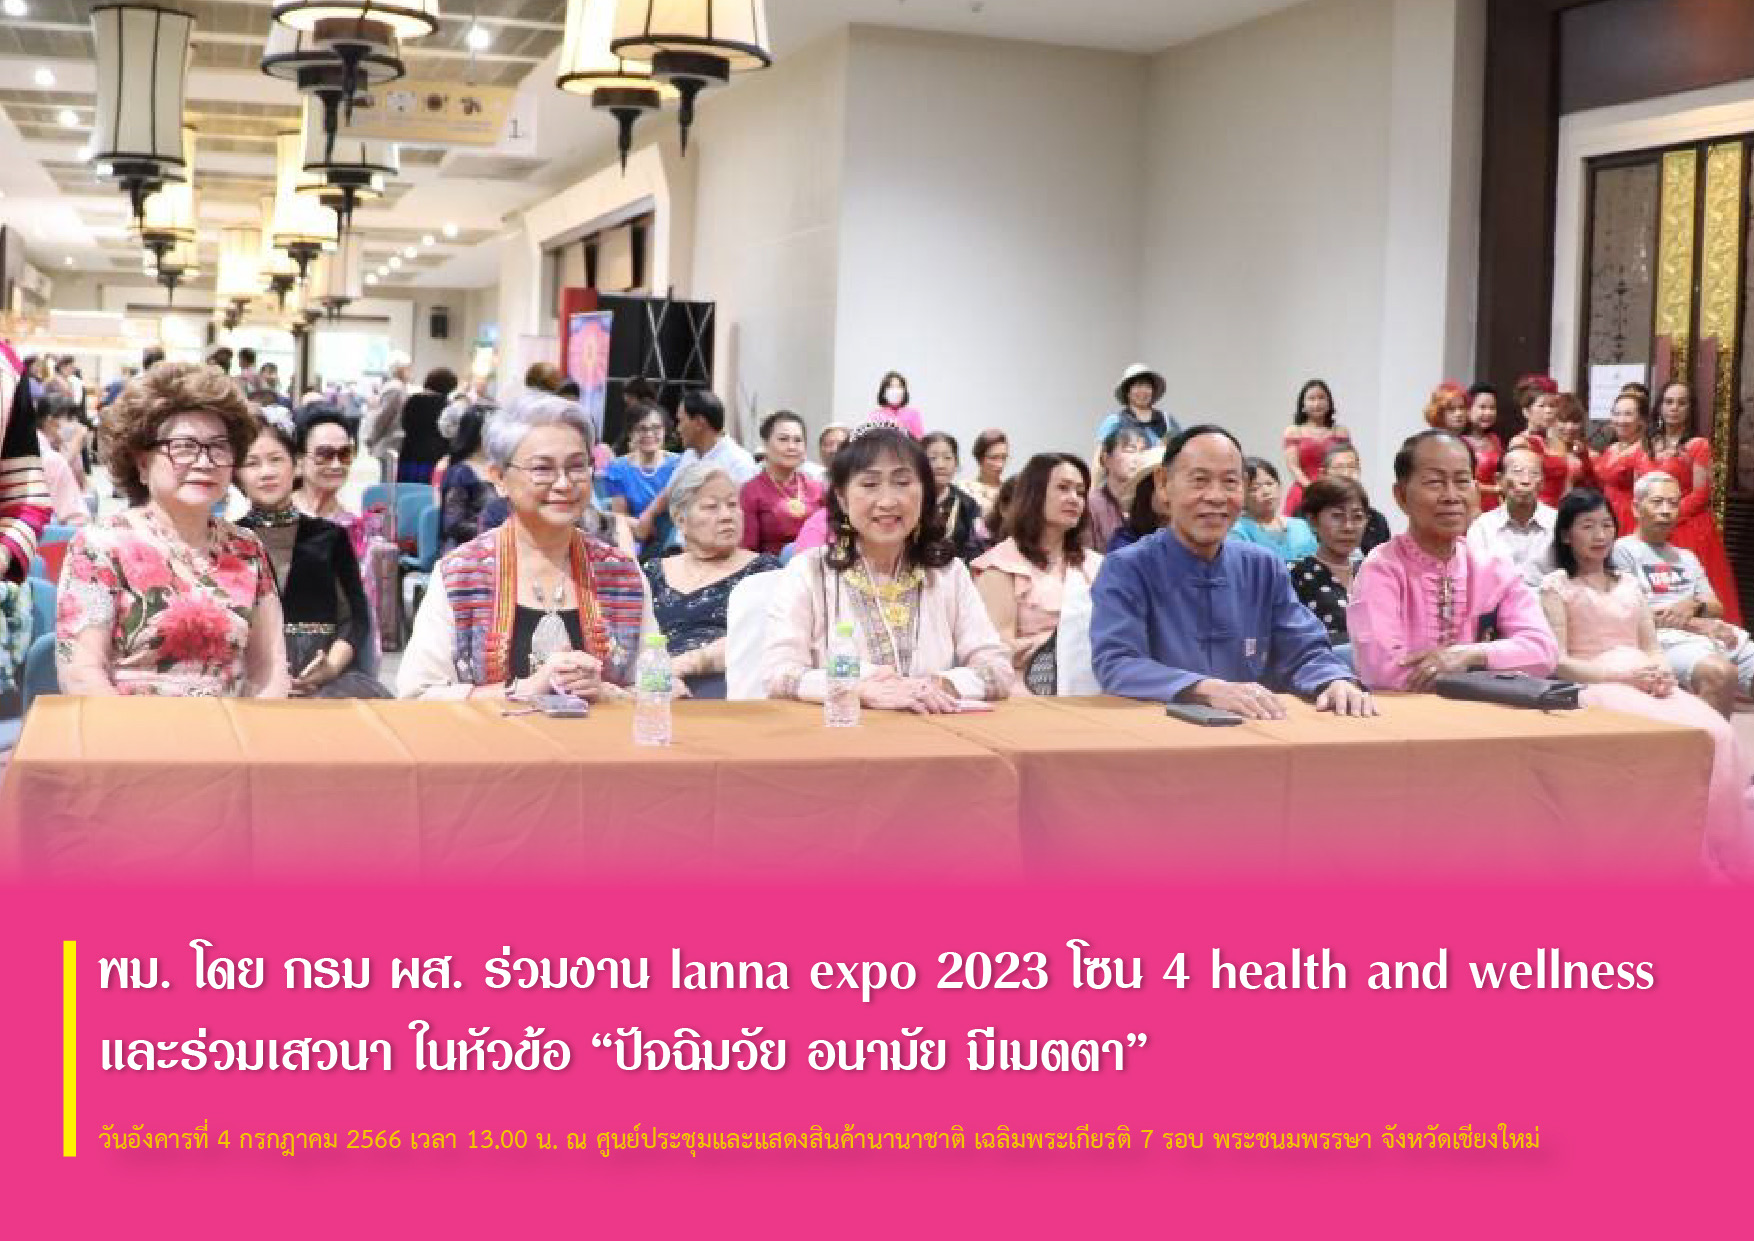 พม. โดย กรม ผส. ร่วมงาน lanna expo 2023 โซน 4 health and wellness และร่วมเสวนา ในหัวข้อ “ปัจฉิมวัย อนามัย มีเมตตา”